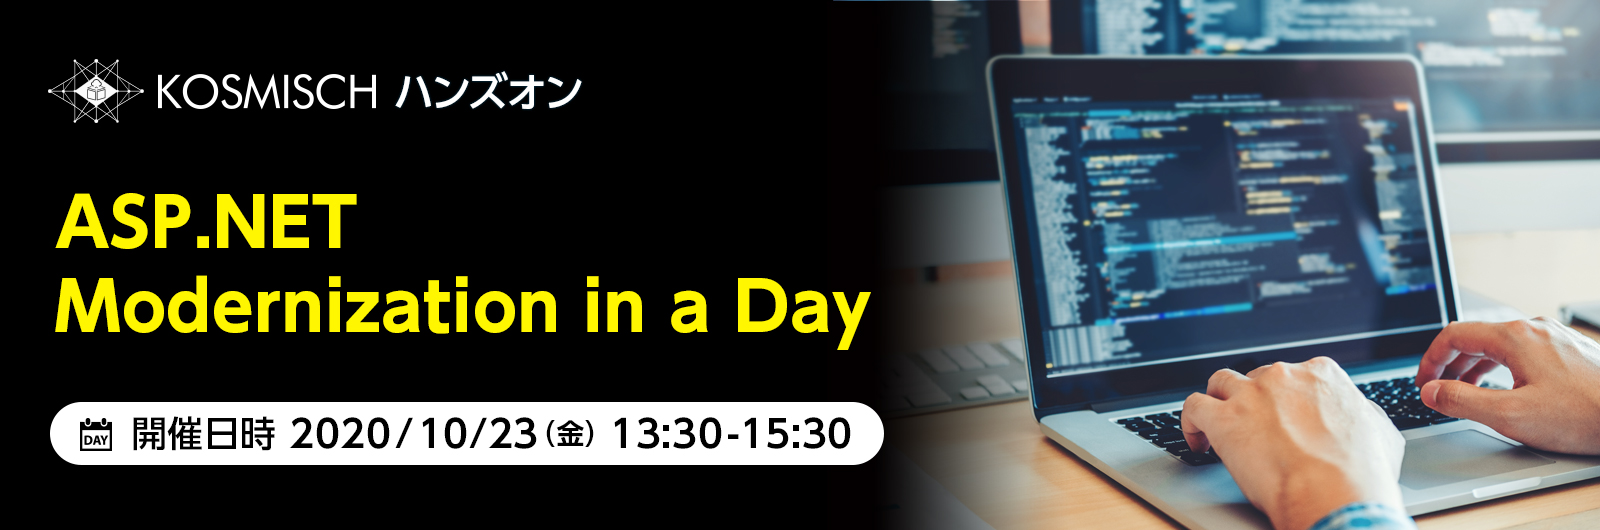 オンラインハンズオン「ASP.NET Modernization in a Day」を10月23日(金)に日本マイクロソフトと共催で開催